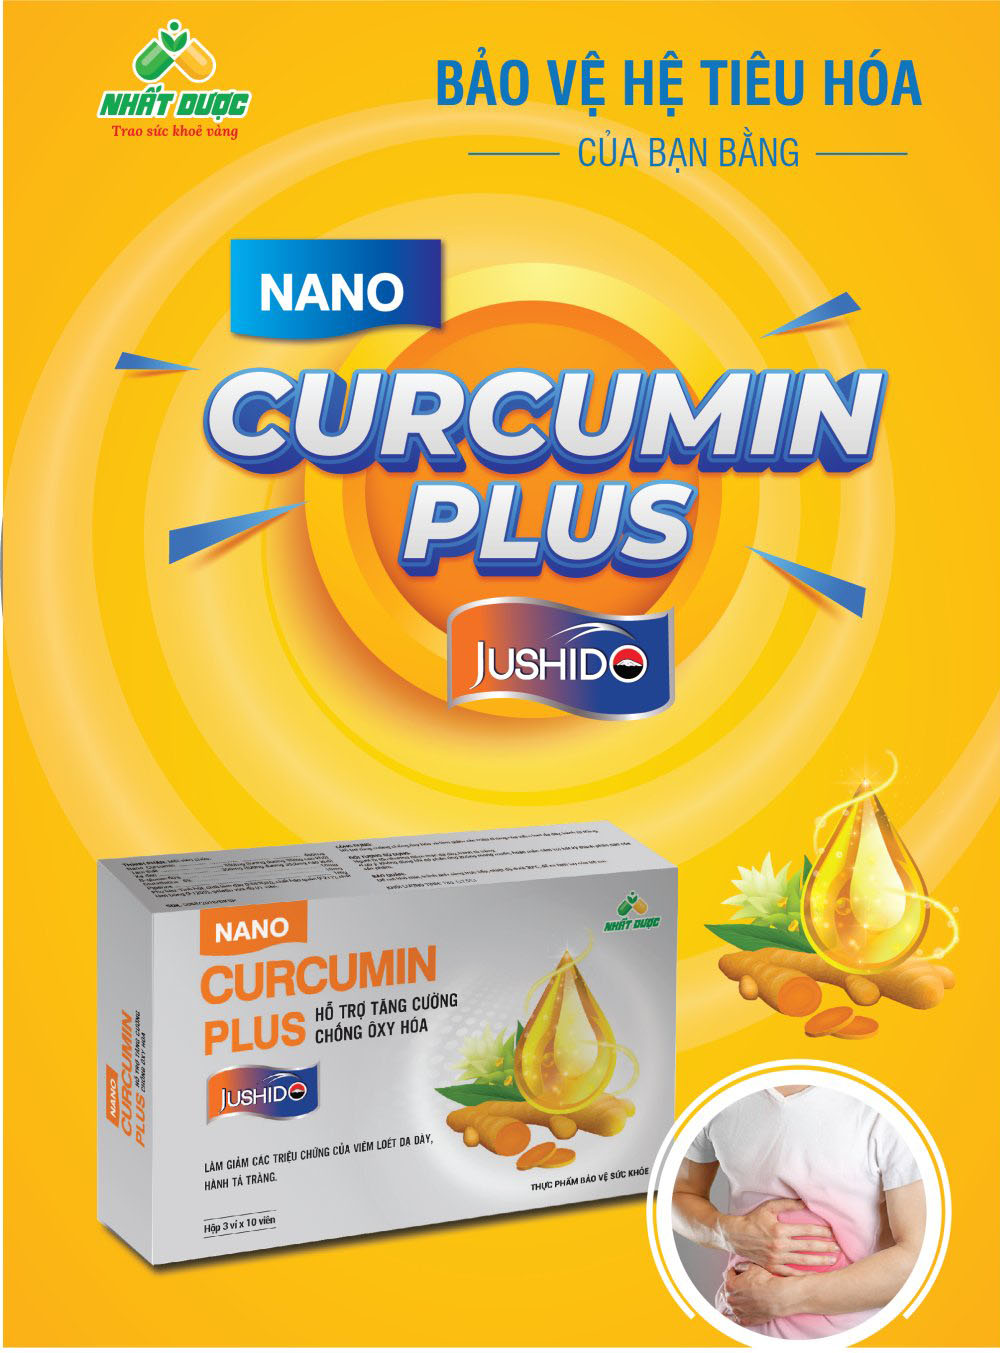 Curcumin Plus Jushido - Nhất Dược là sản phẩm hỗ trợ điều trị viêm đại tràng